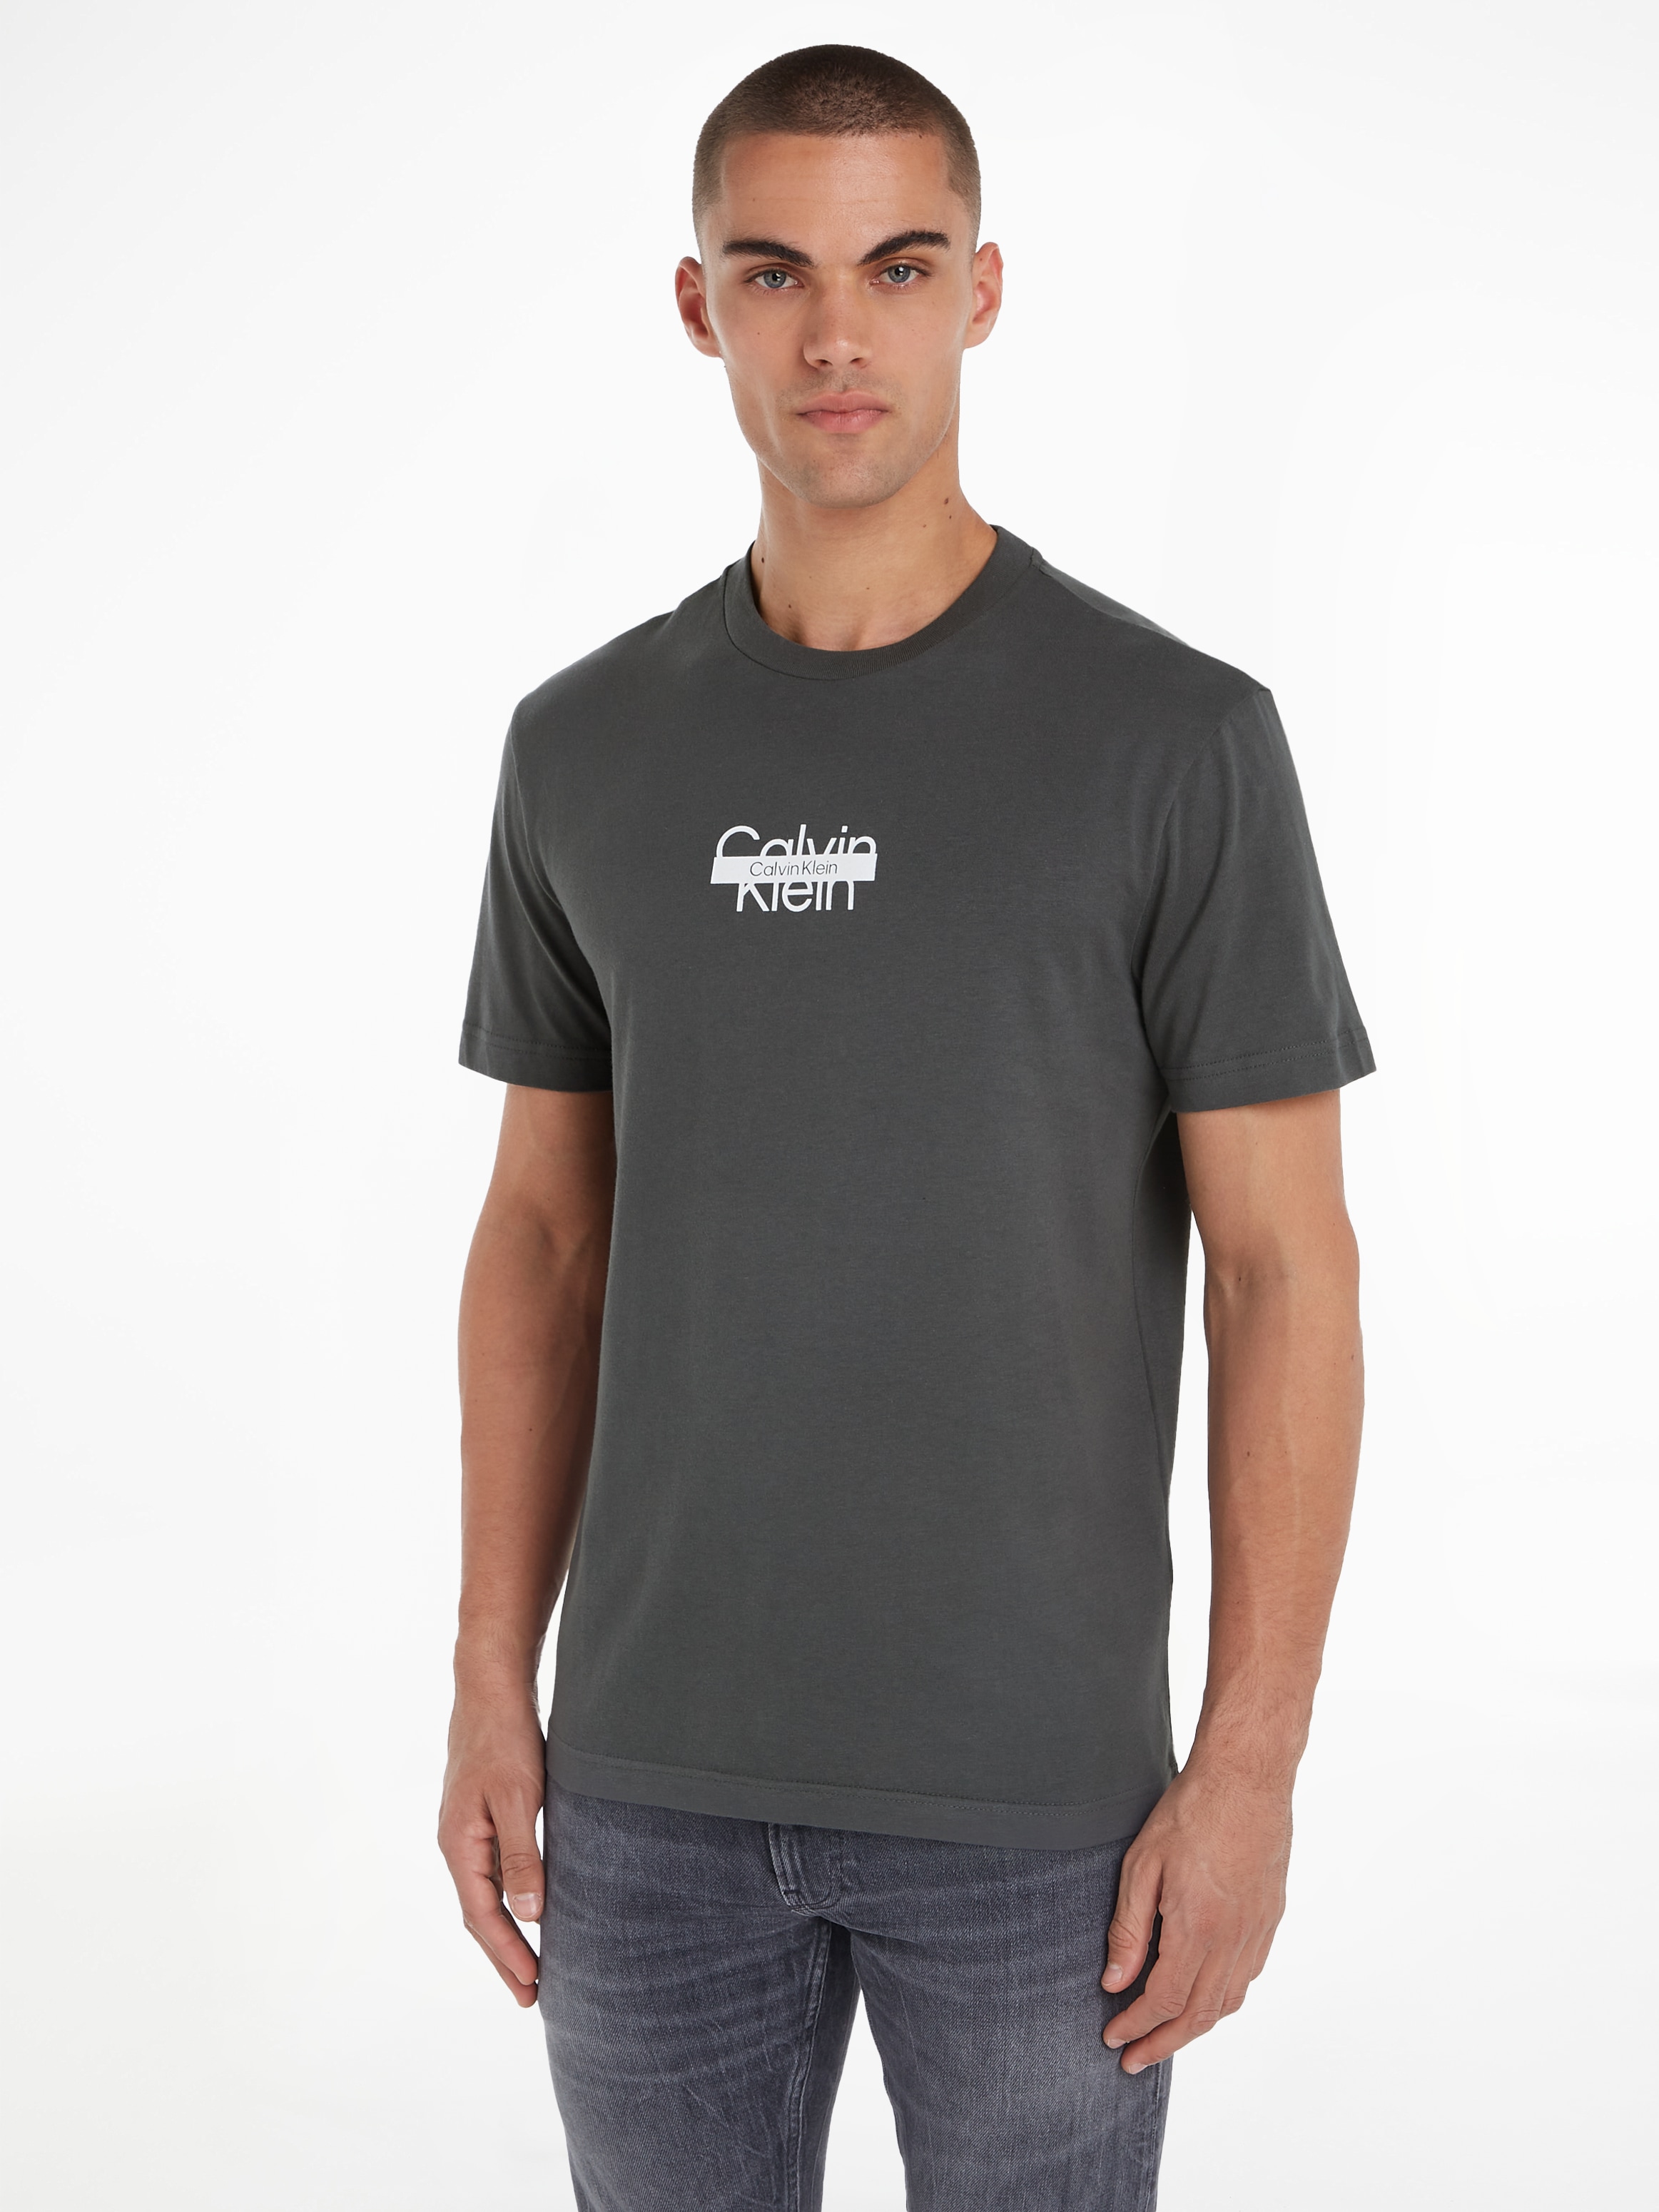 Klein Calvin »CUT auf T-Shirt T-SHIRT« LOGO ♕ THROUGH versandkostenfrei